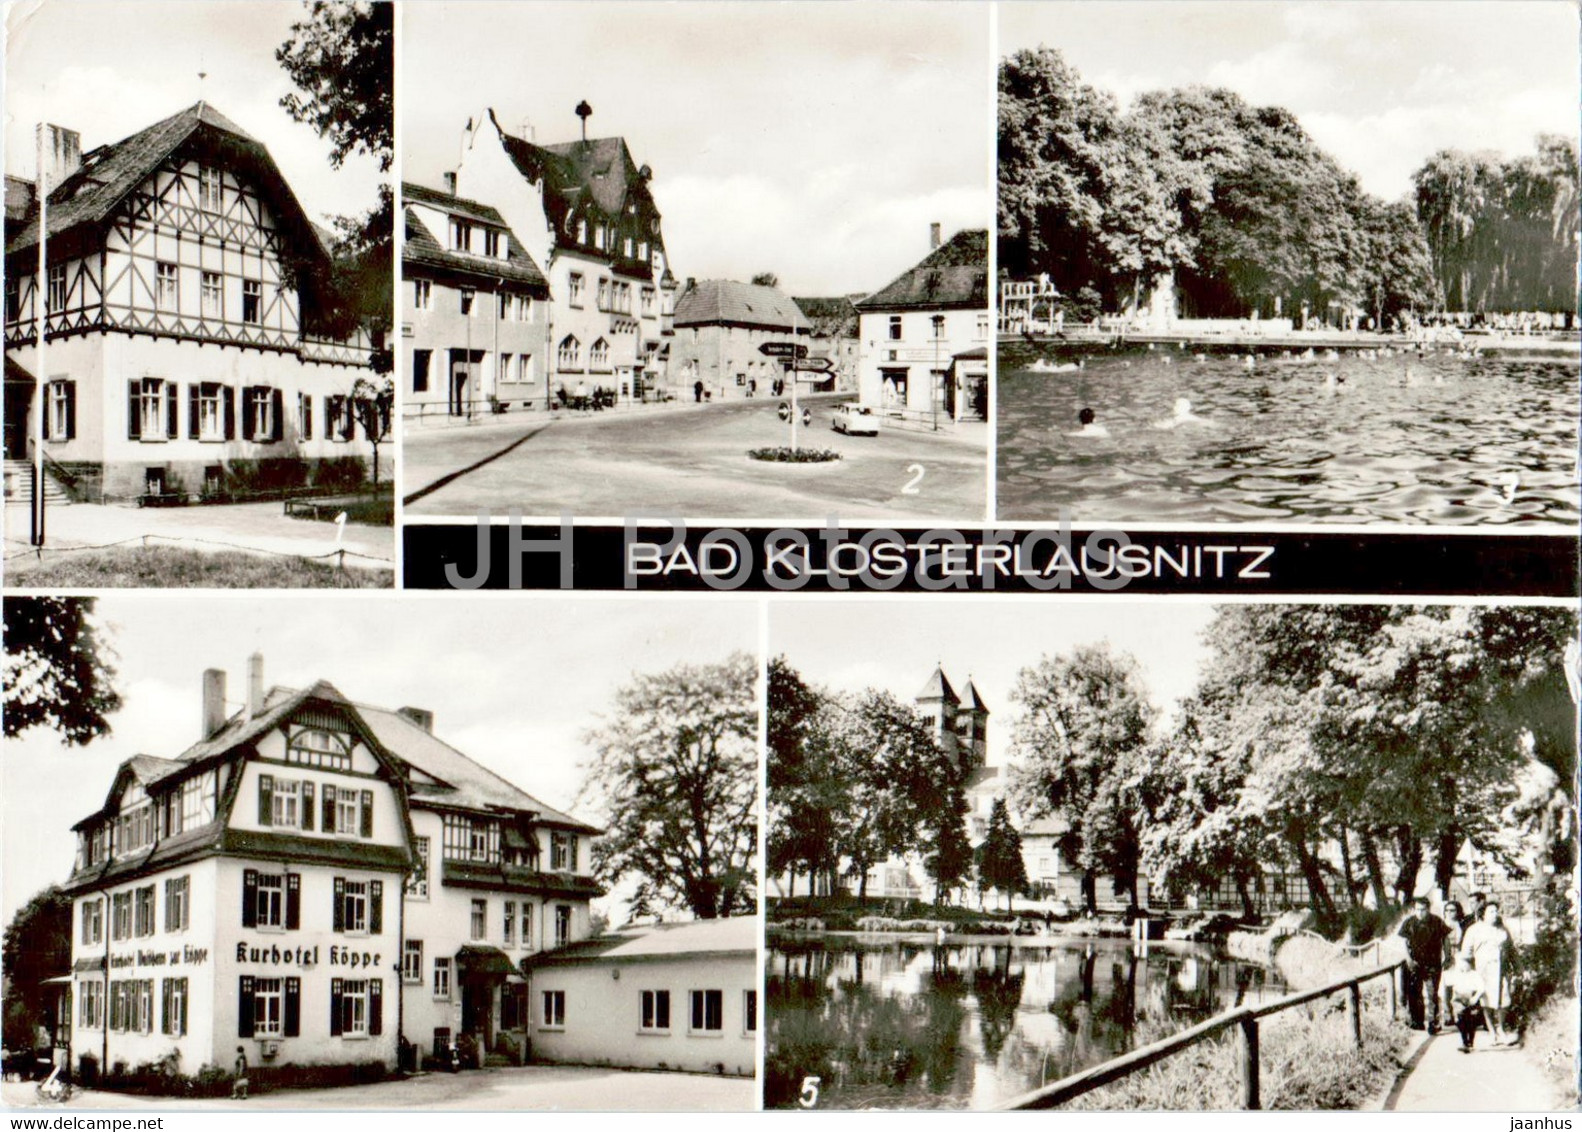 Bad Klosterlausnitz - Sanatorium Dr Friedrich Wolf - Am Markt - Bad - Kurhotel Koppe - 1982 - Germany DDR - Used - Bad Klosterlausnitz